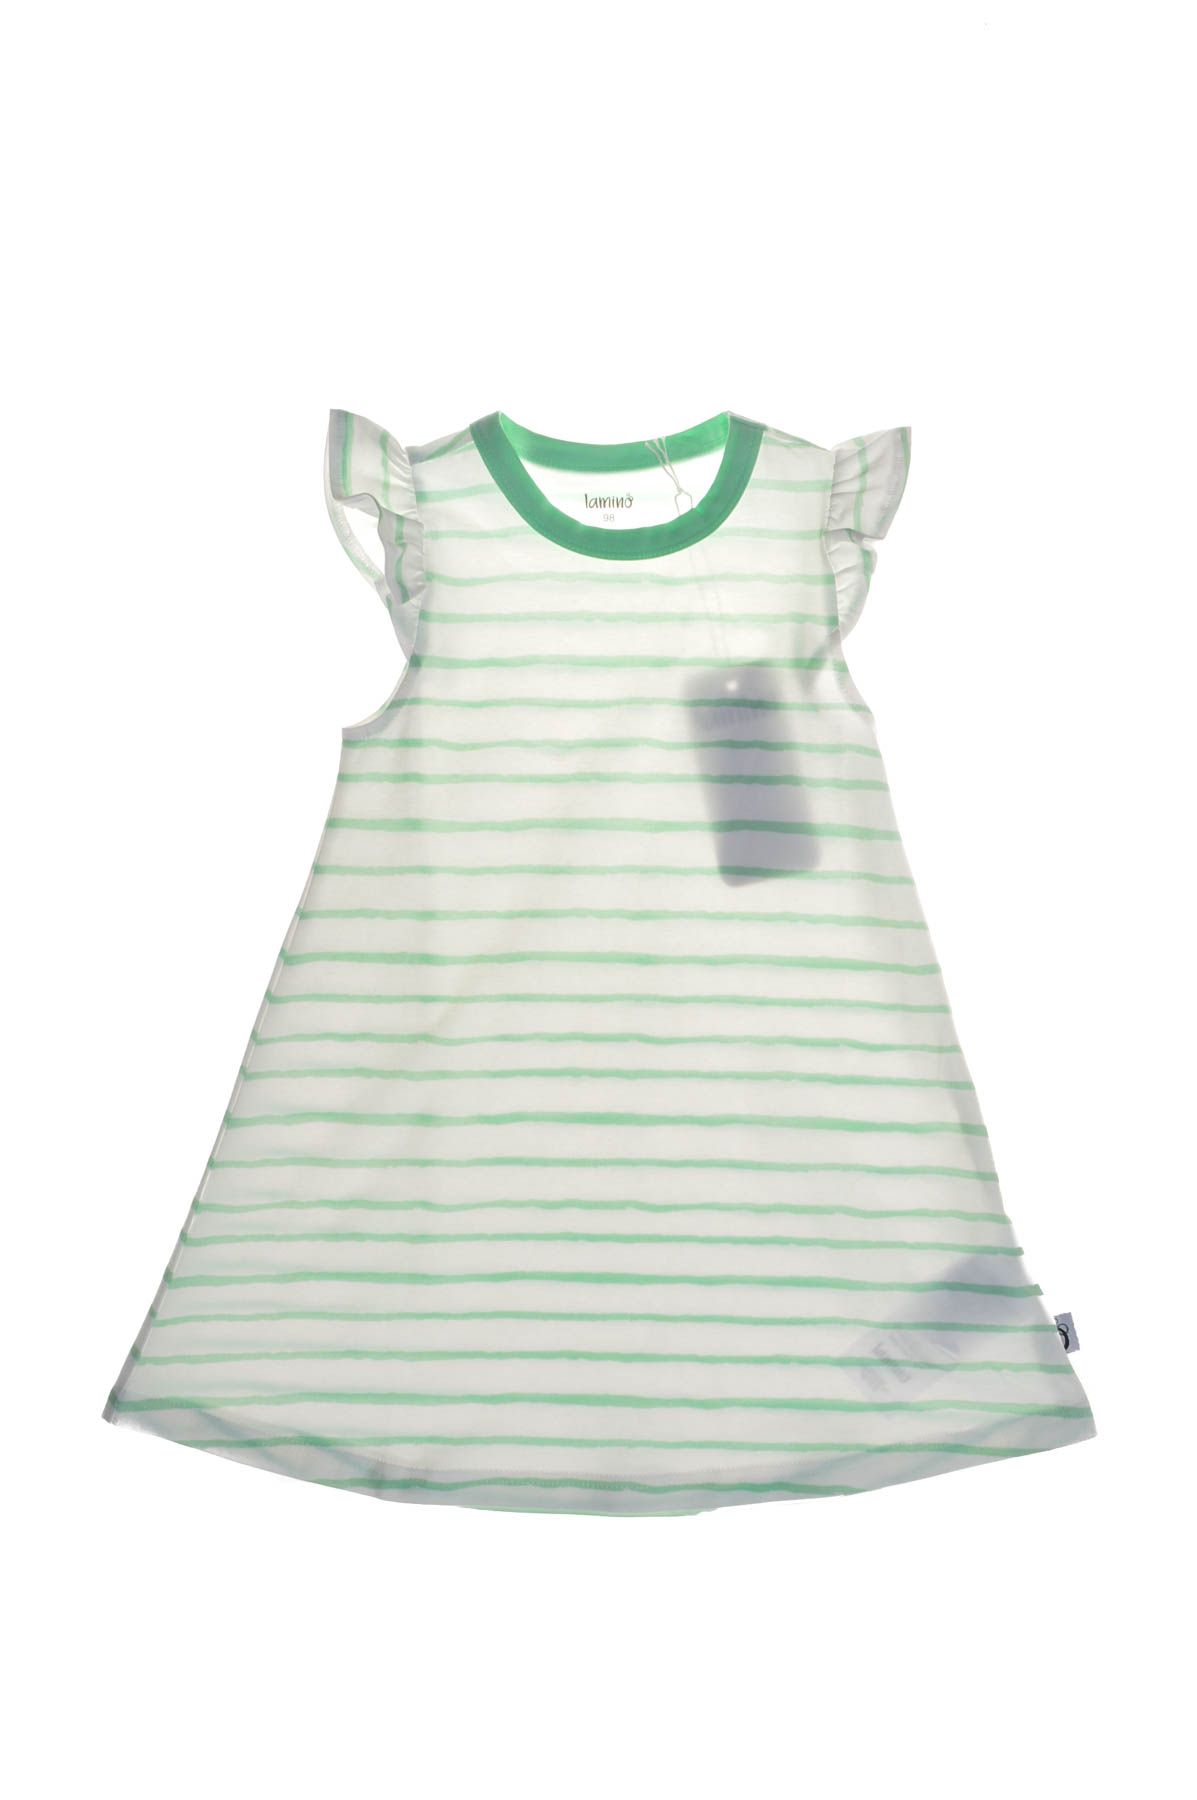 Child's dress - Lamino - 0